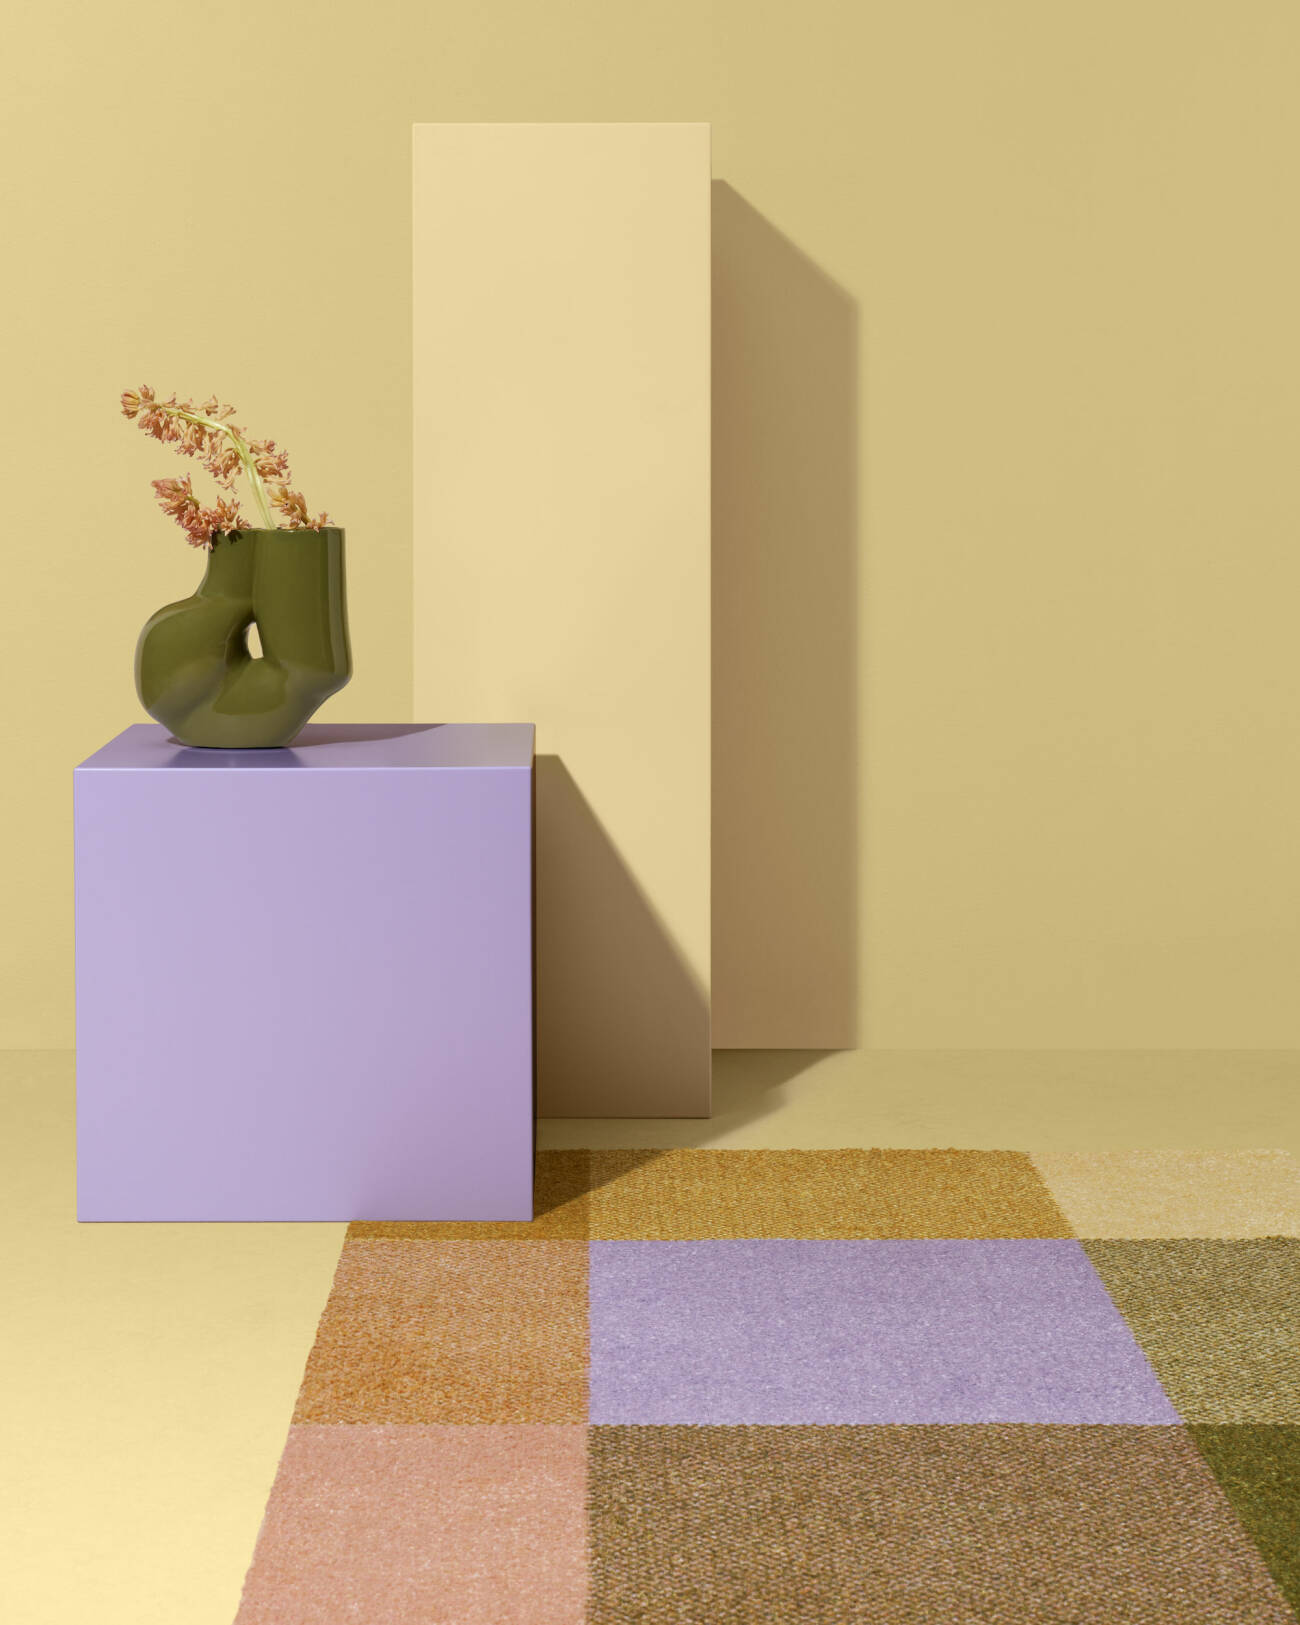 Addera pasteller i ditt hem med pastellfärgade textilier, som mattor och sängkläder